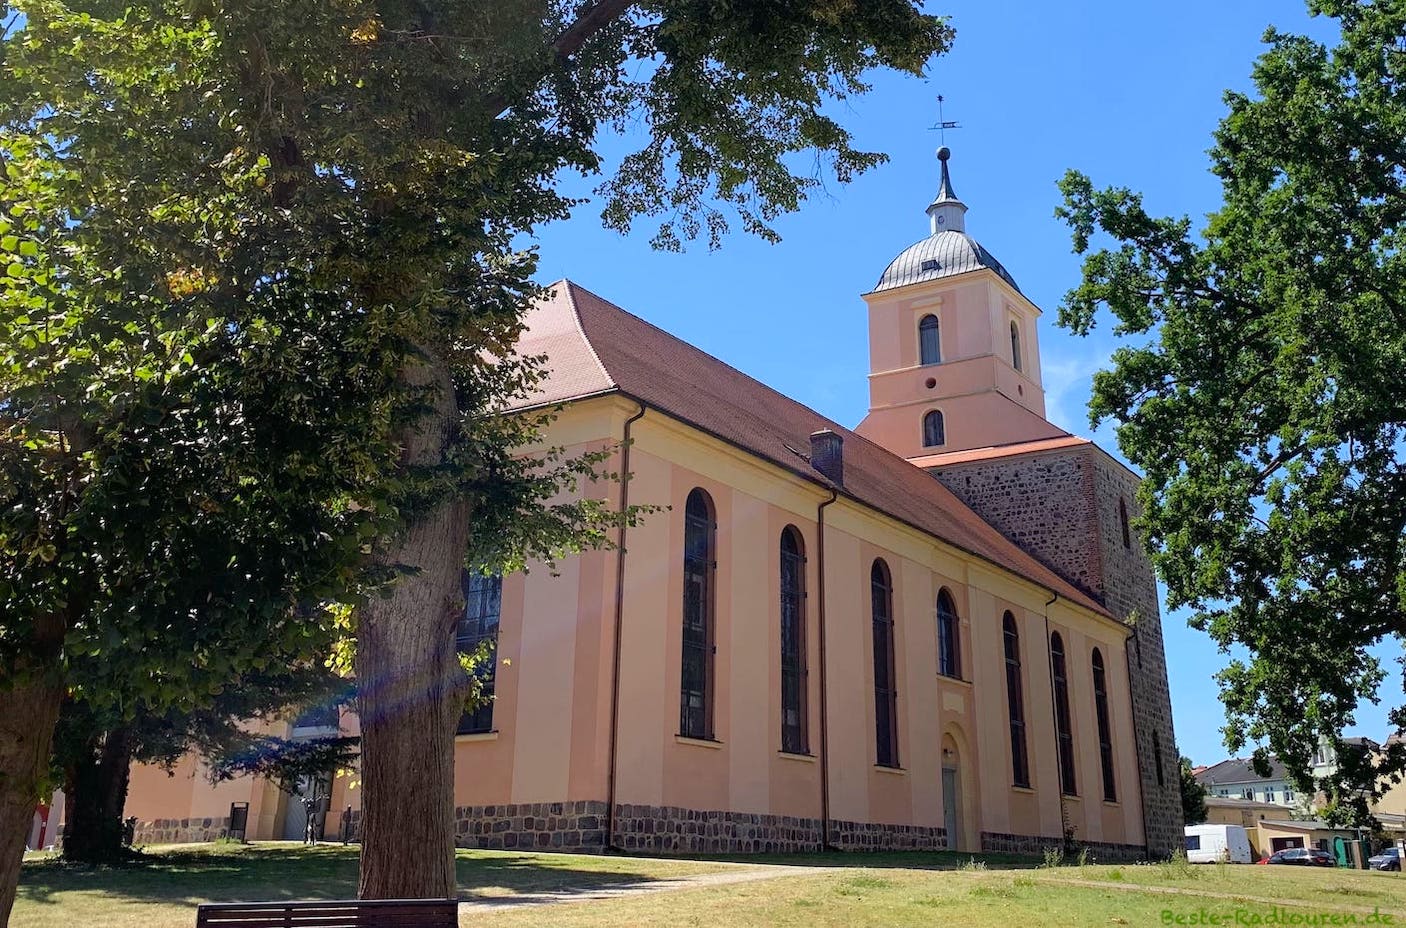 Foto von hinten: Evangelische Kirche Zehdenick